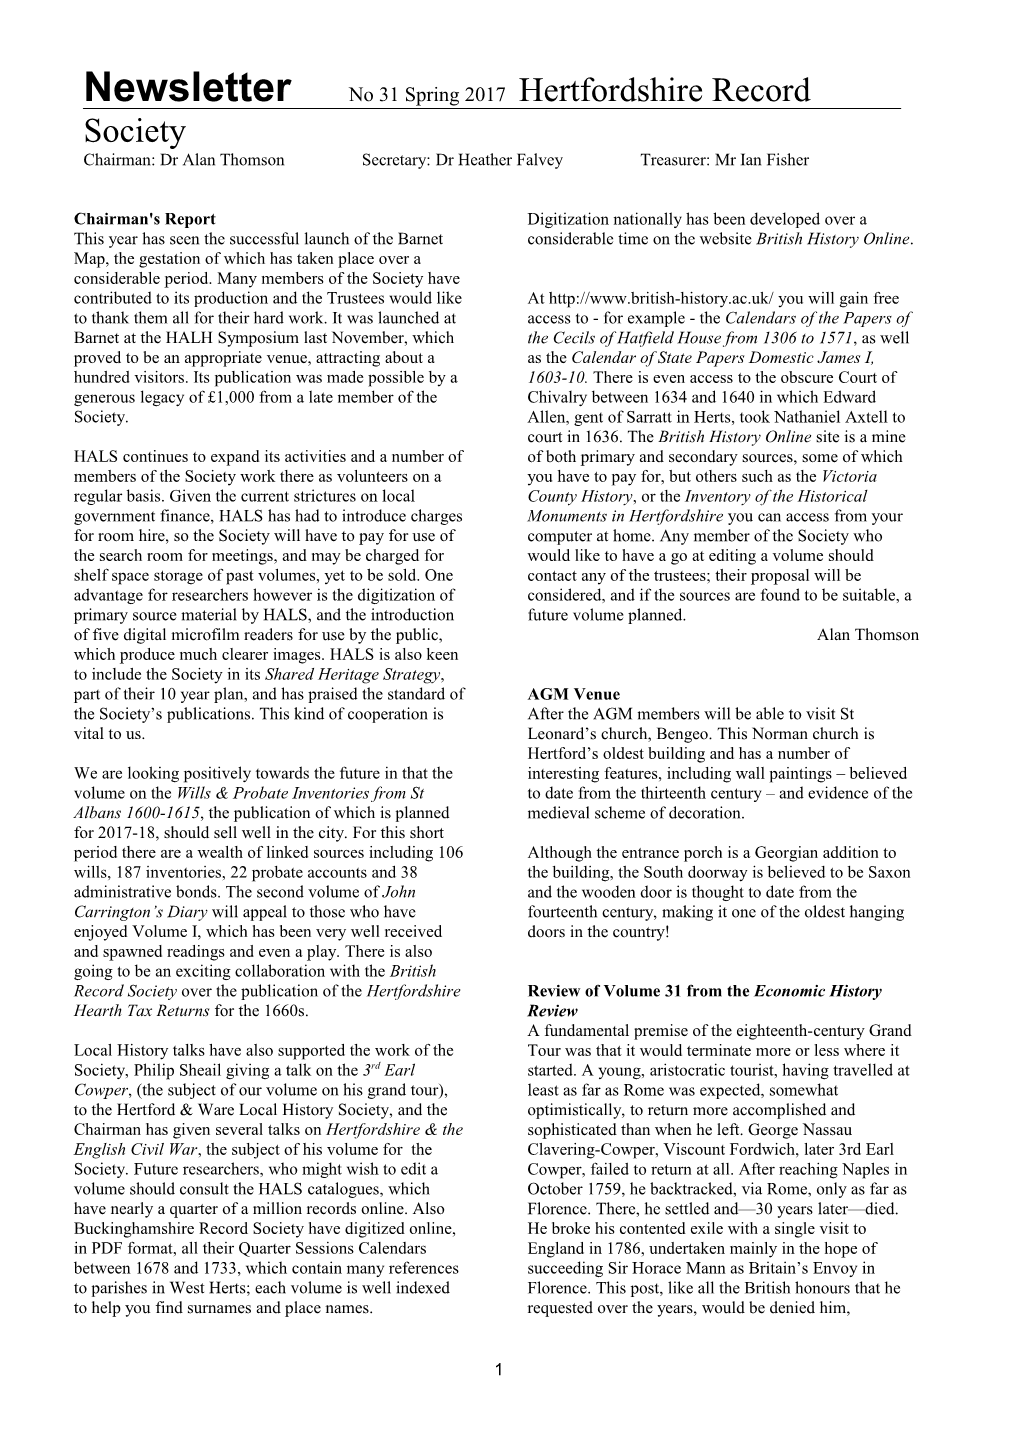 Newsletter No 28 Spring 2014 Hertfordshire Record Society